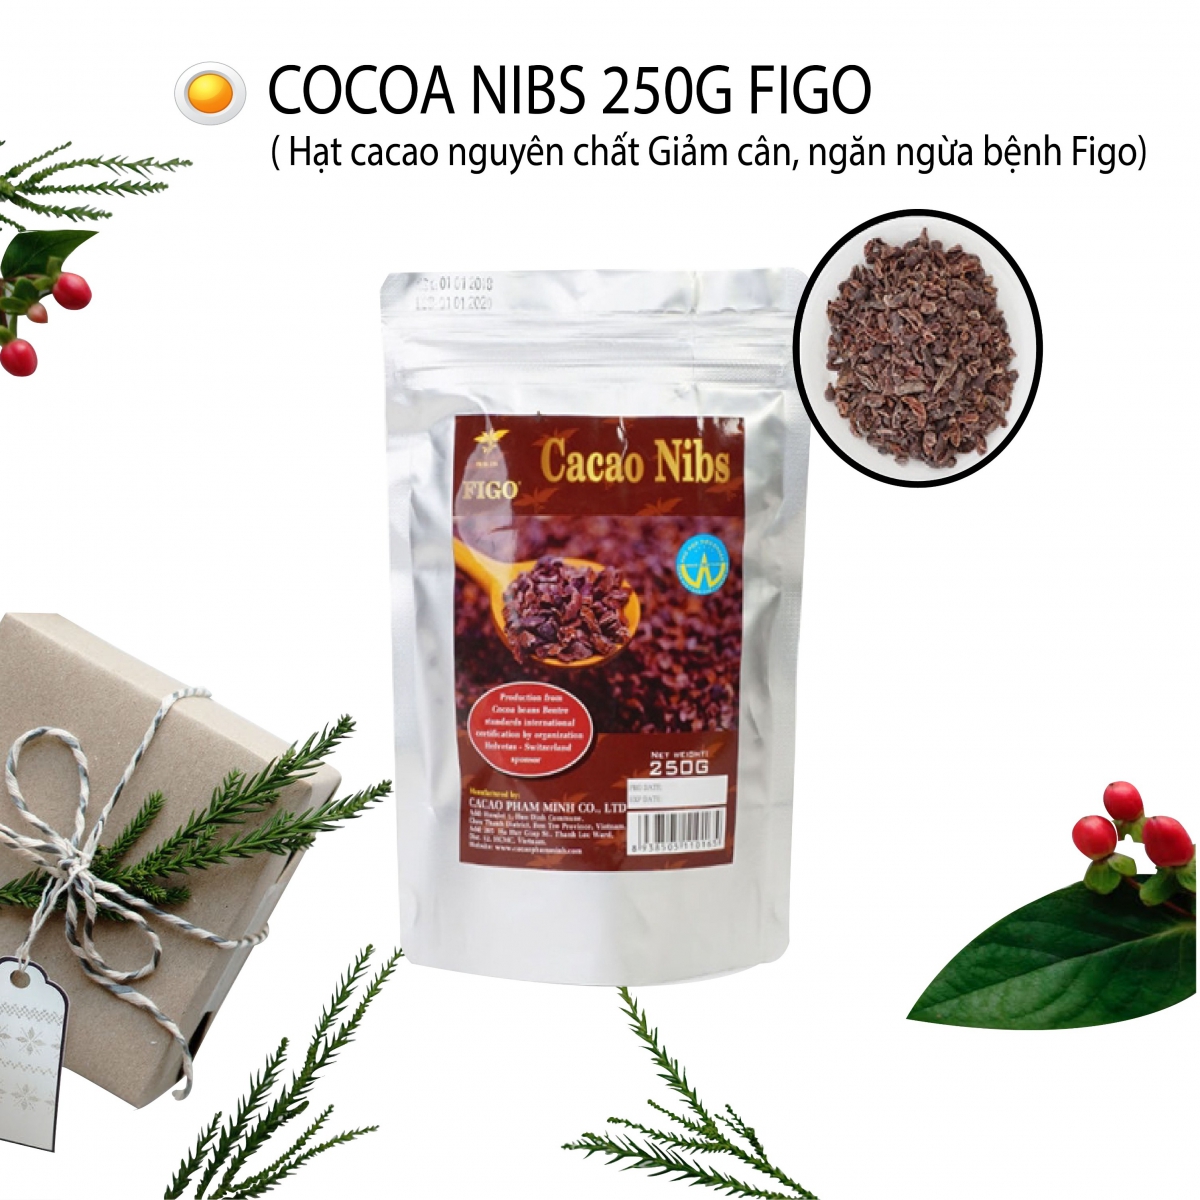 Tác dụng tuyệt vời của cacao Nibs bạn có biết?